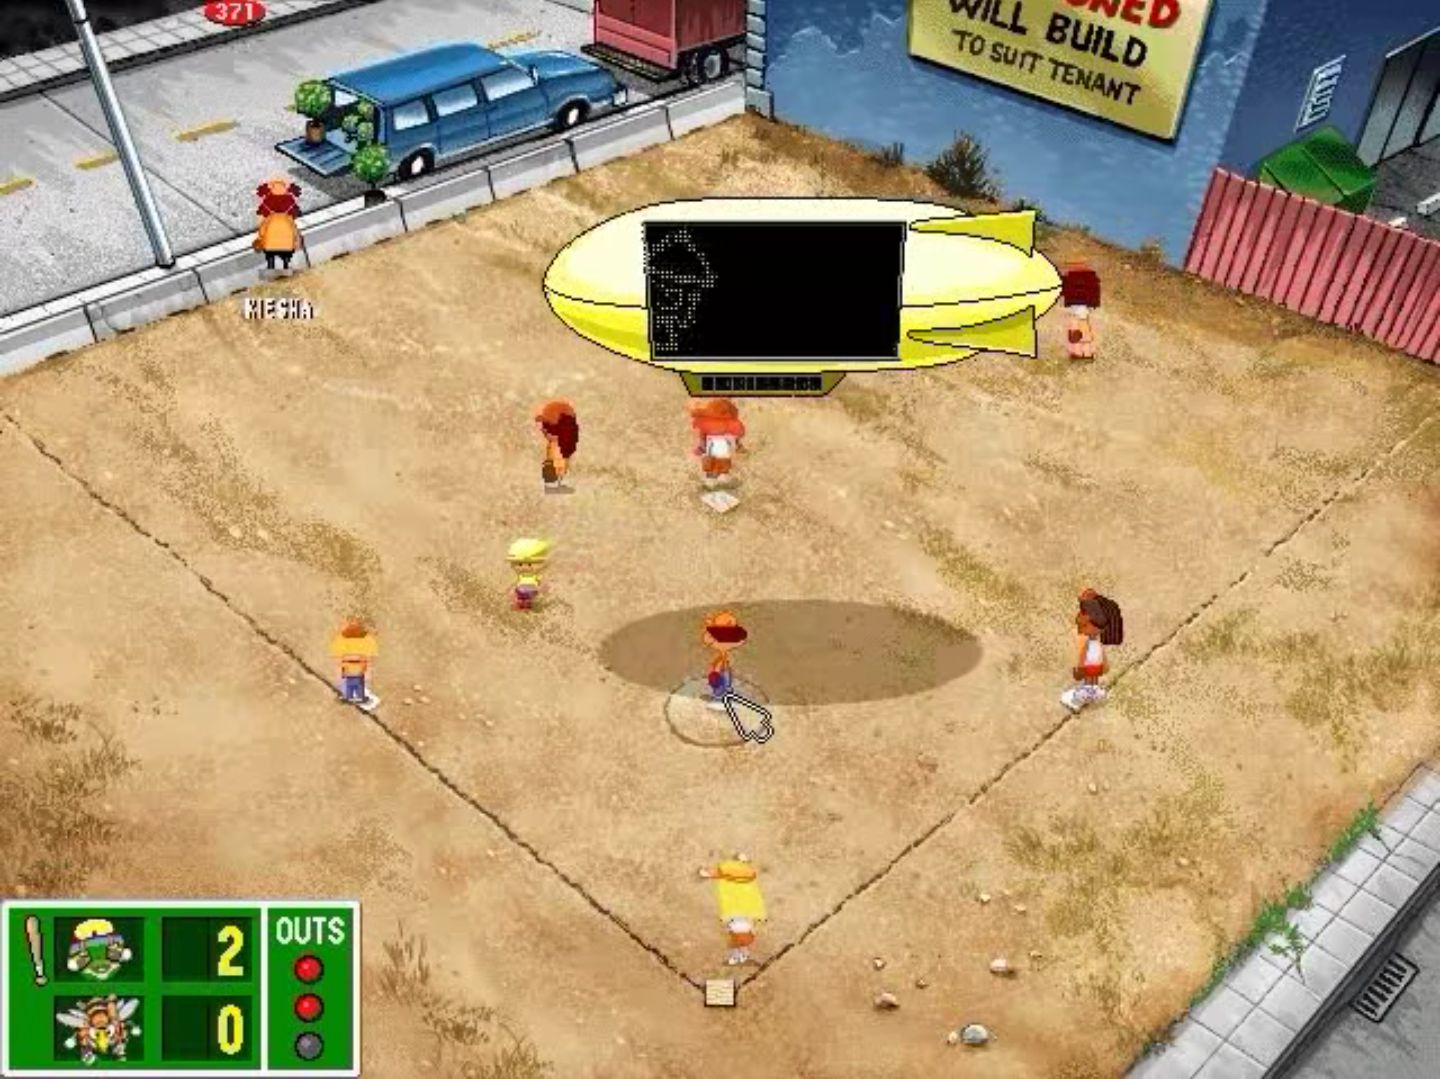 Backyard Baseball (1997)